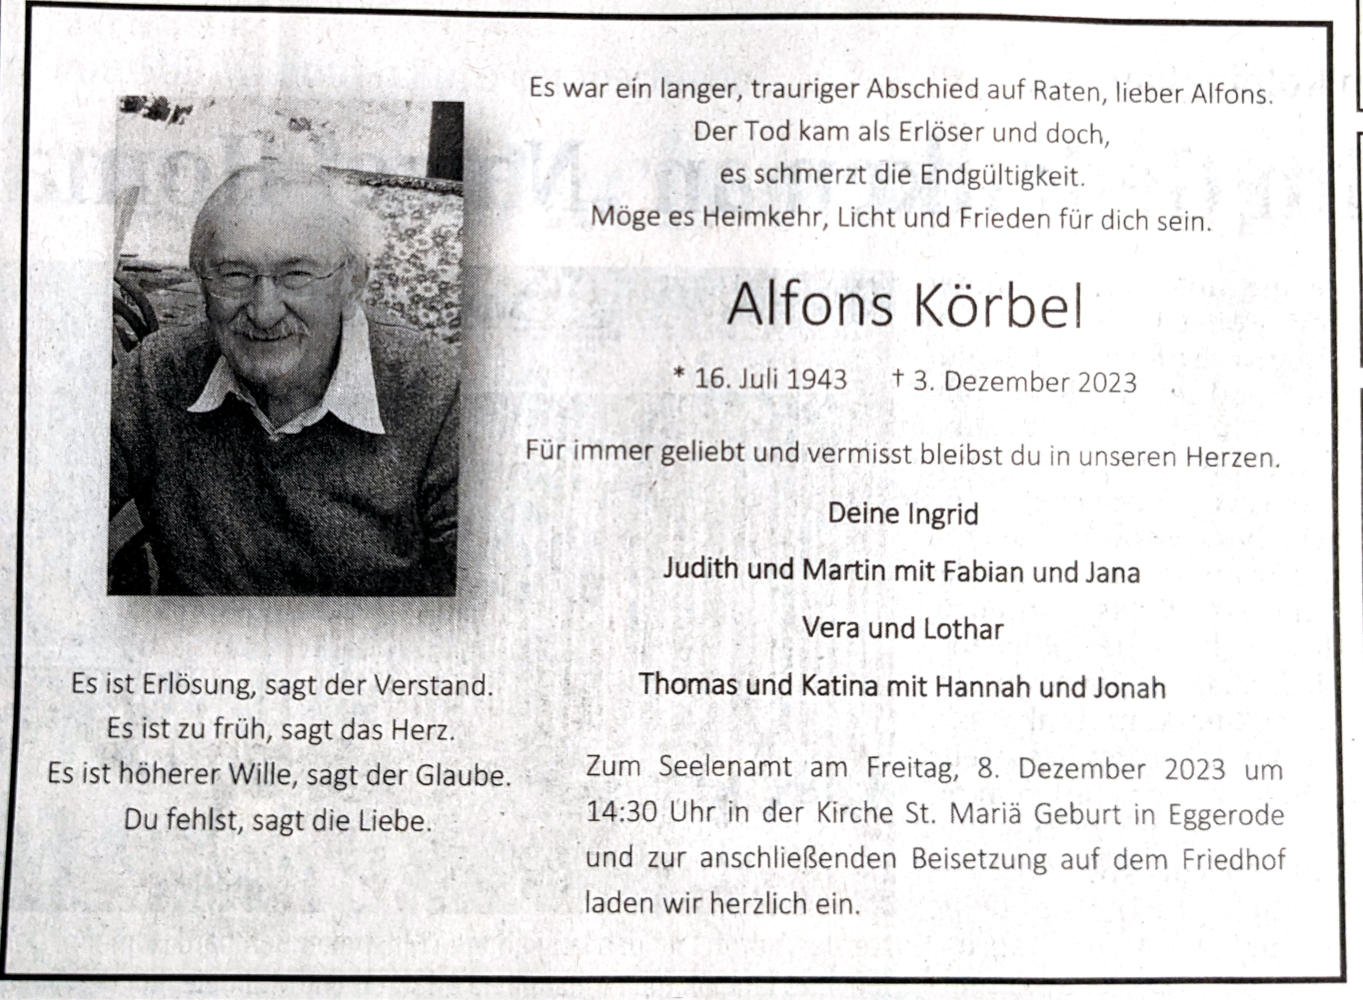 Unser langjähriger Erster Vorsitzender Alfons Körbel ist nach langer schwerer Krankheit am letzten Sonntag verstorben. Das Seelenamt findet am kommenden Freitag um 14:30 Uhr in der Kirche St. Maria Geburt in Eggerode statt.